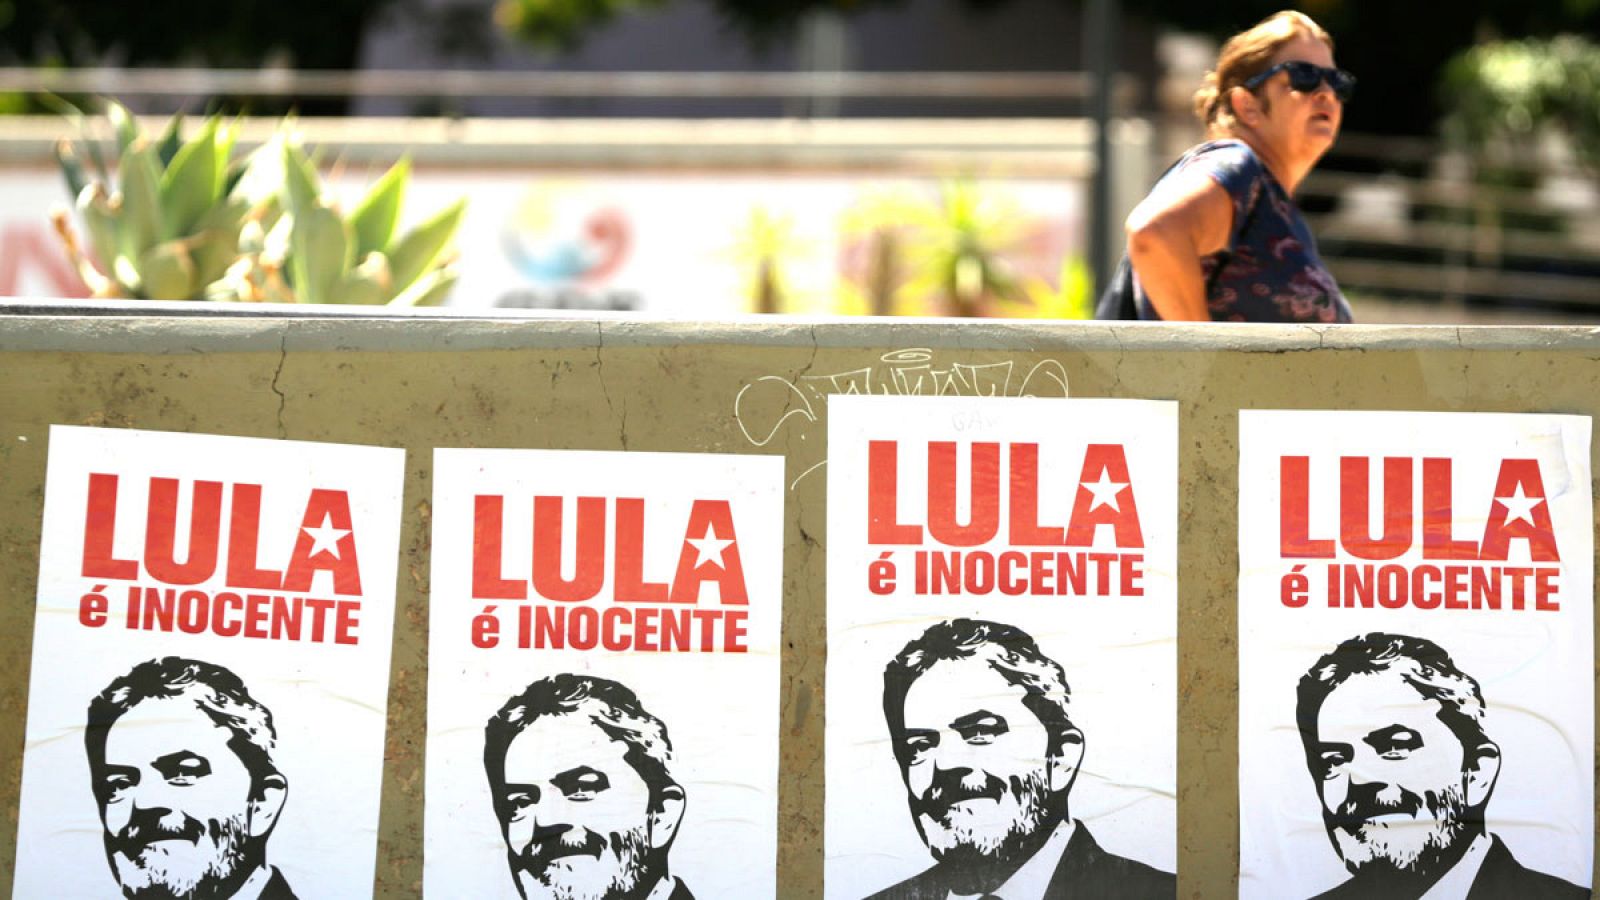 Vista de carteles del expresidente brasileño Luiz Inácio Lula da Silva con el mensaje "Lula é inocente" (Lula es inocente) el año pasado en Brasilia.